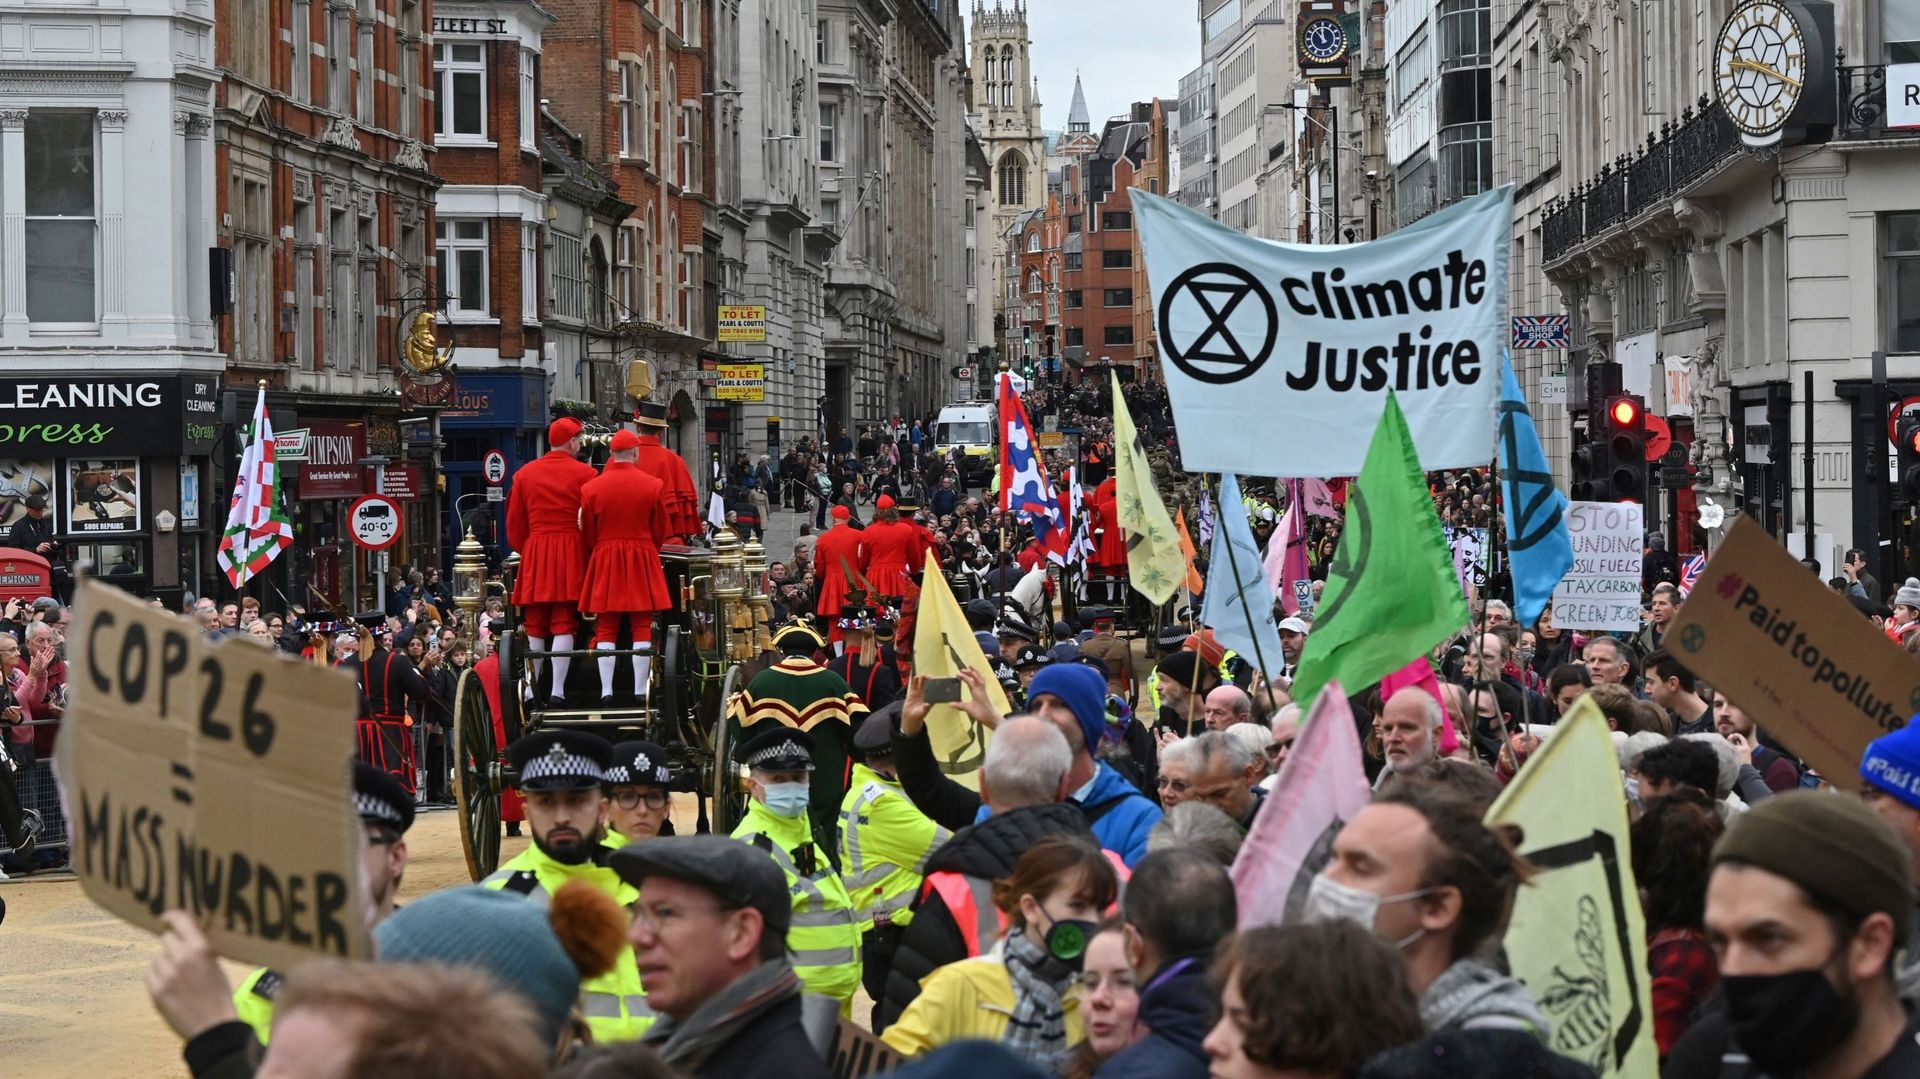 Les militants écologistes du groupe Extinction Rebellion manifesteront de nouveau à Londres, a annoncé vendredi un porte-parole